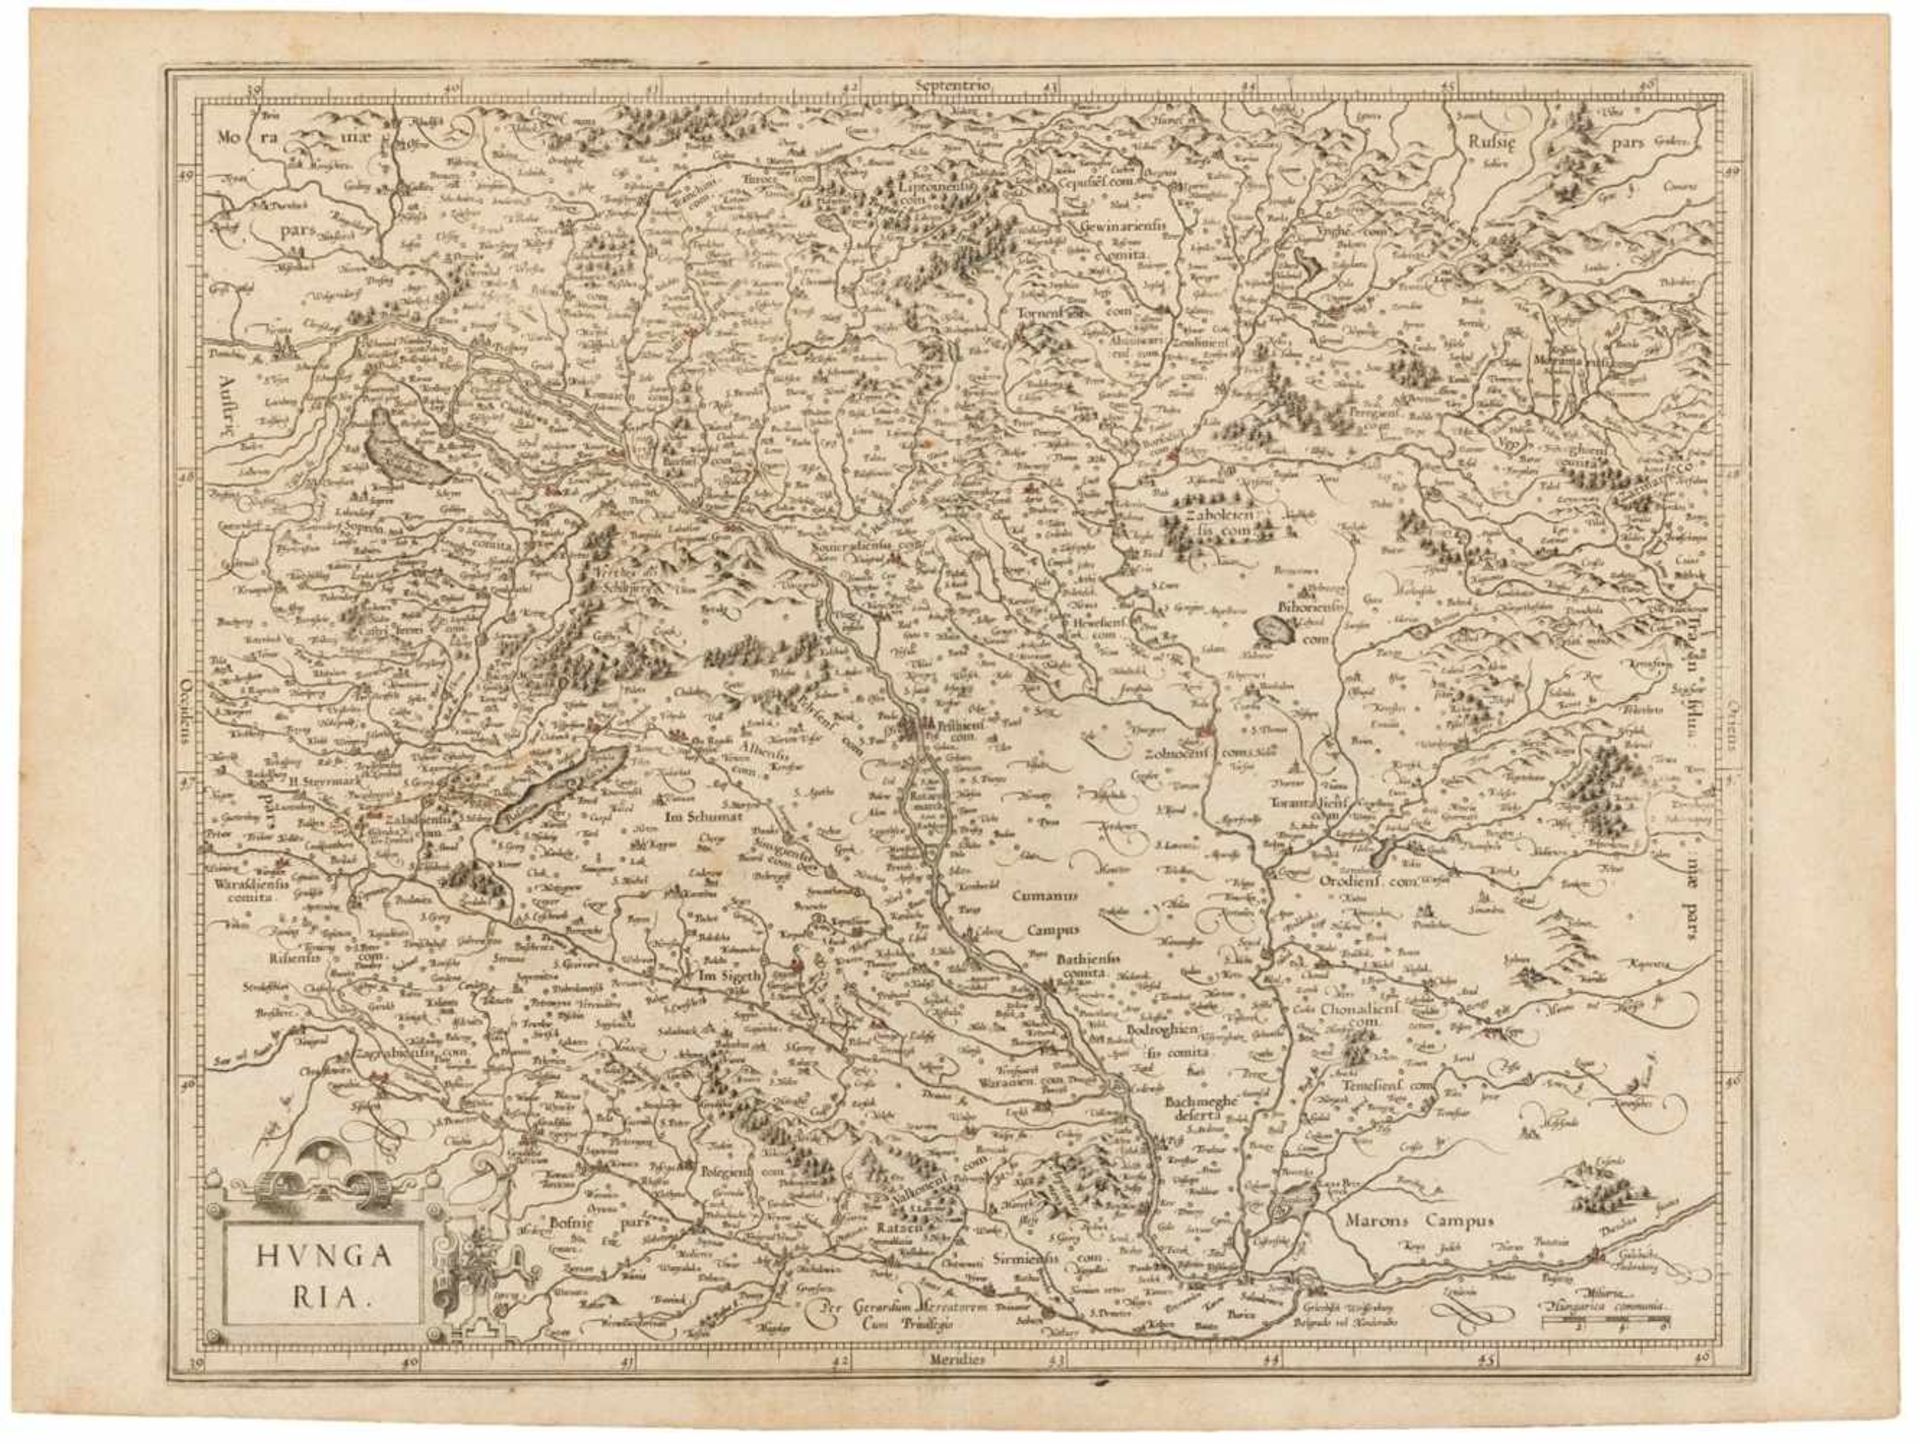 Ungarn. Hvngaria. Kupferstichkarte von Gerard Mercator auf Bütten, um 1630. Plattengröße 37 x 44,7